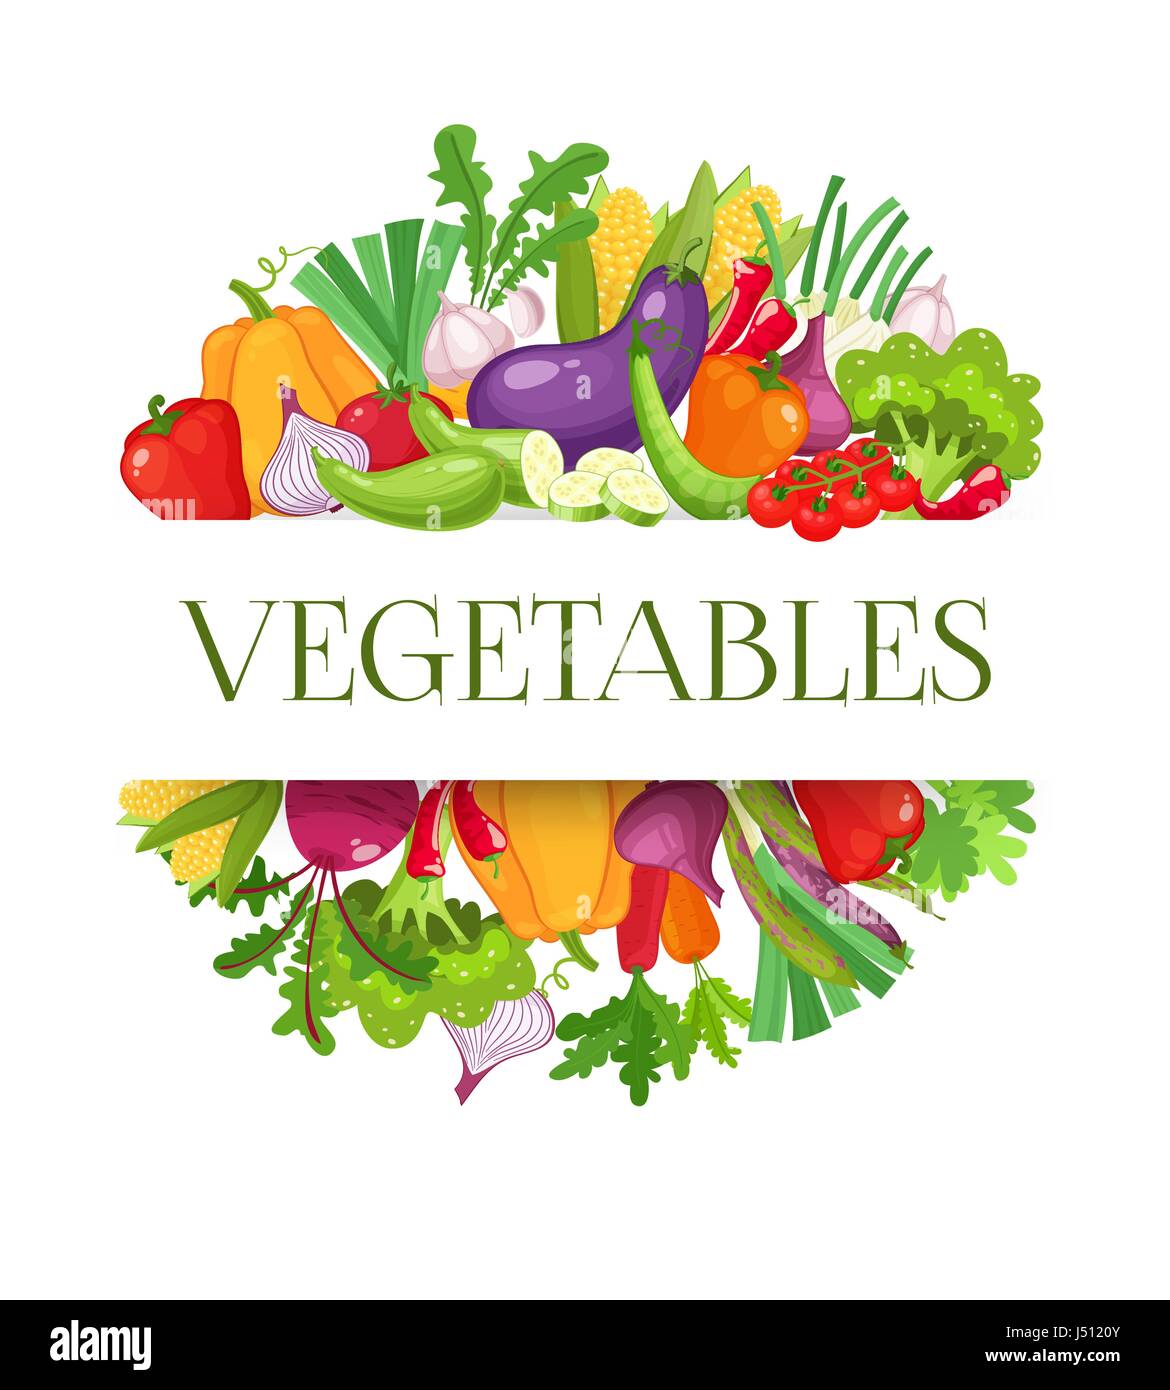 Banner-Runde Komposition mit buntem Gemüse für Menügestaltung Bauernmarkt. Gesunde Ernährung-Konzept. Vektor-Illustration. Stock Vektor